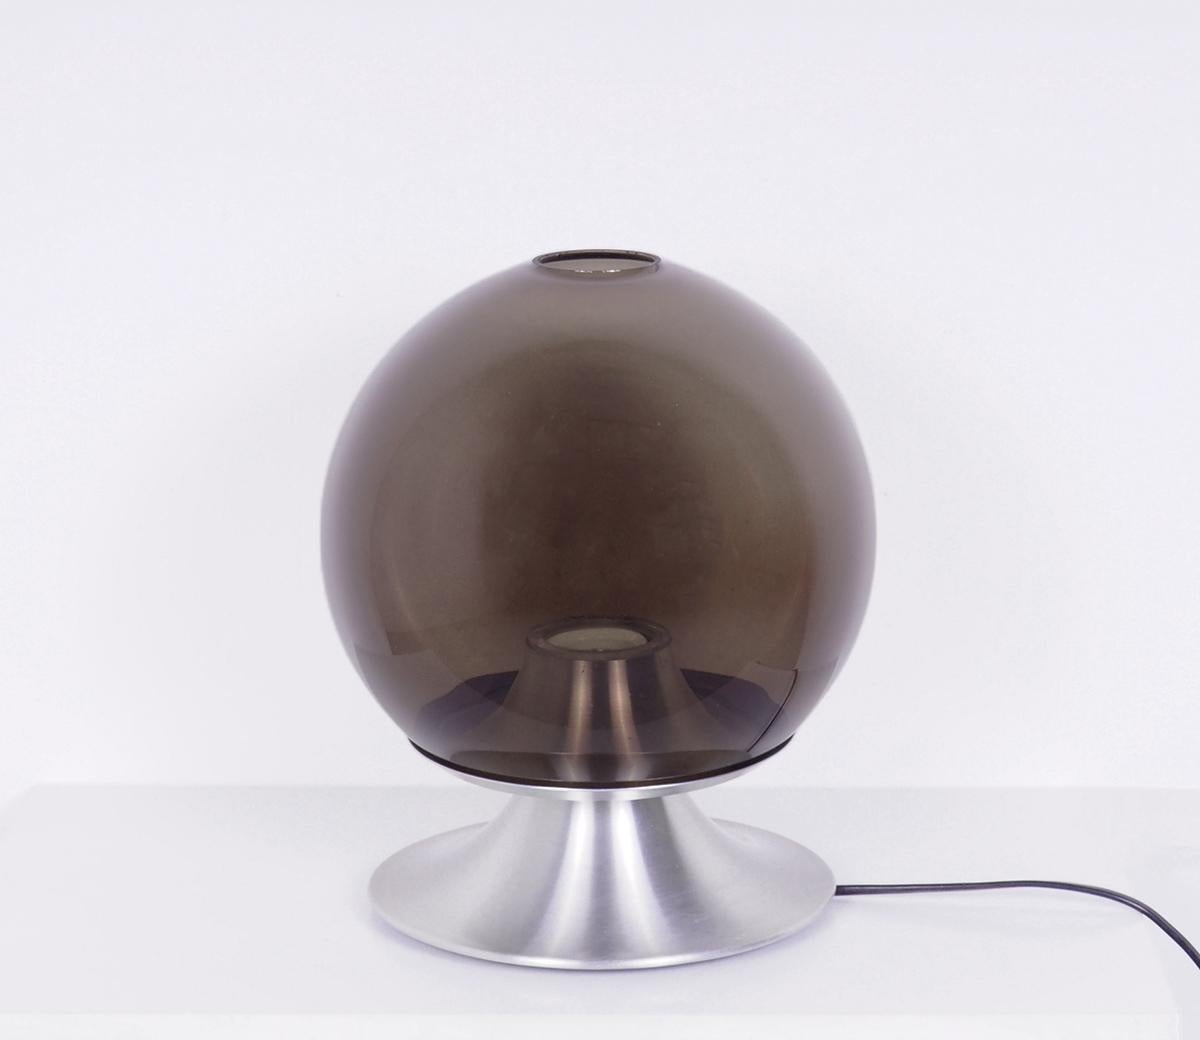 Schöne ikonische Tischlampe von Raak Amsterdam.

Modell D-2001 Dream Island, entworfen von Frank Ligtelijn in den 1960er Jahren.

Die Lampe hat einen runden Schirm aus braun-grauem Rauchglas, der auf einem Aluminiumsockel ruht.

Sehr stimmungsvolle